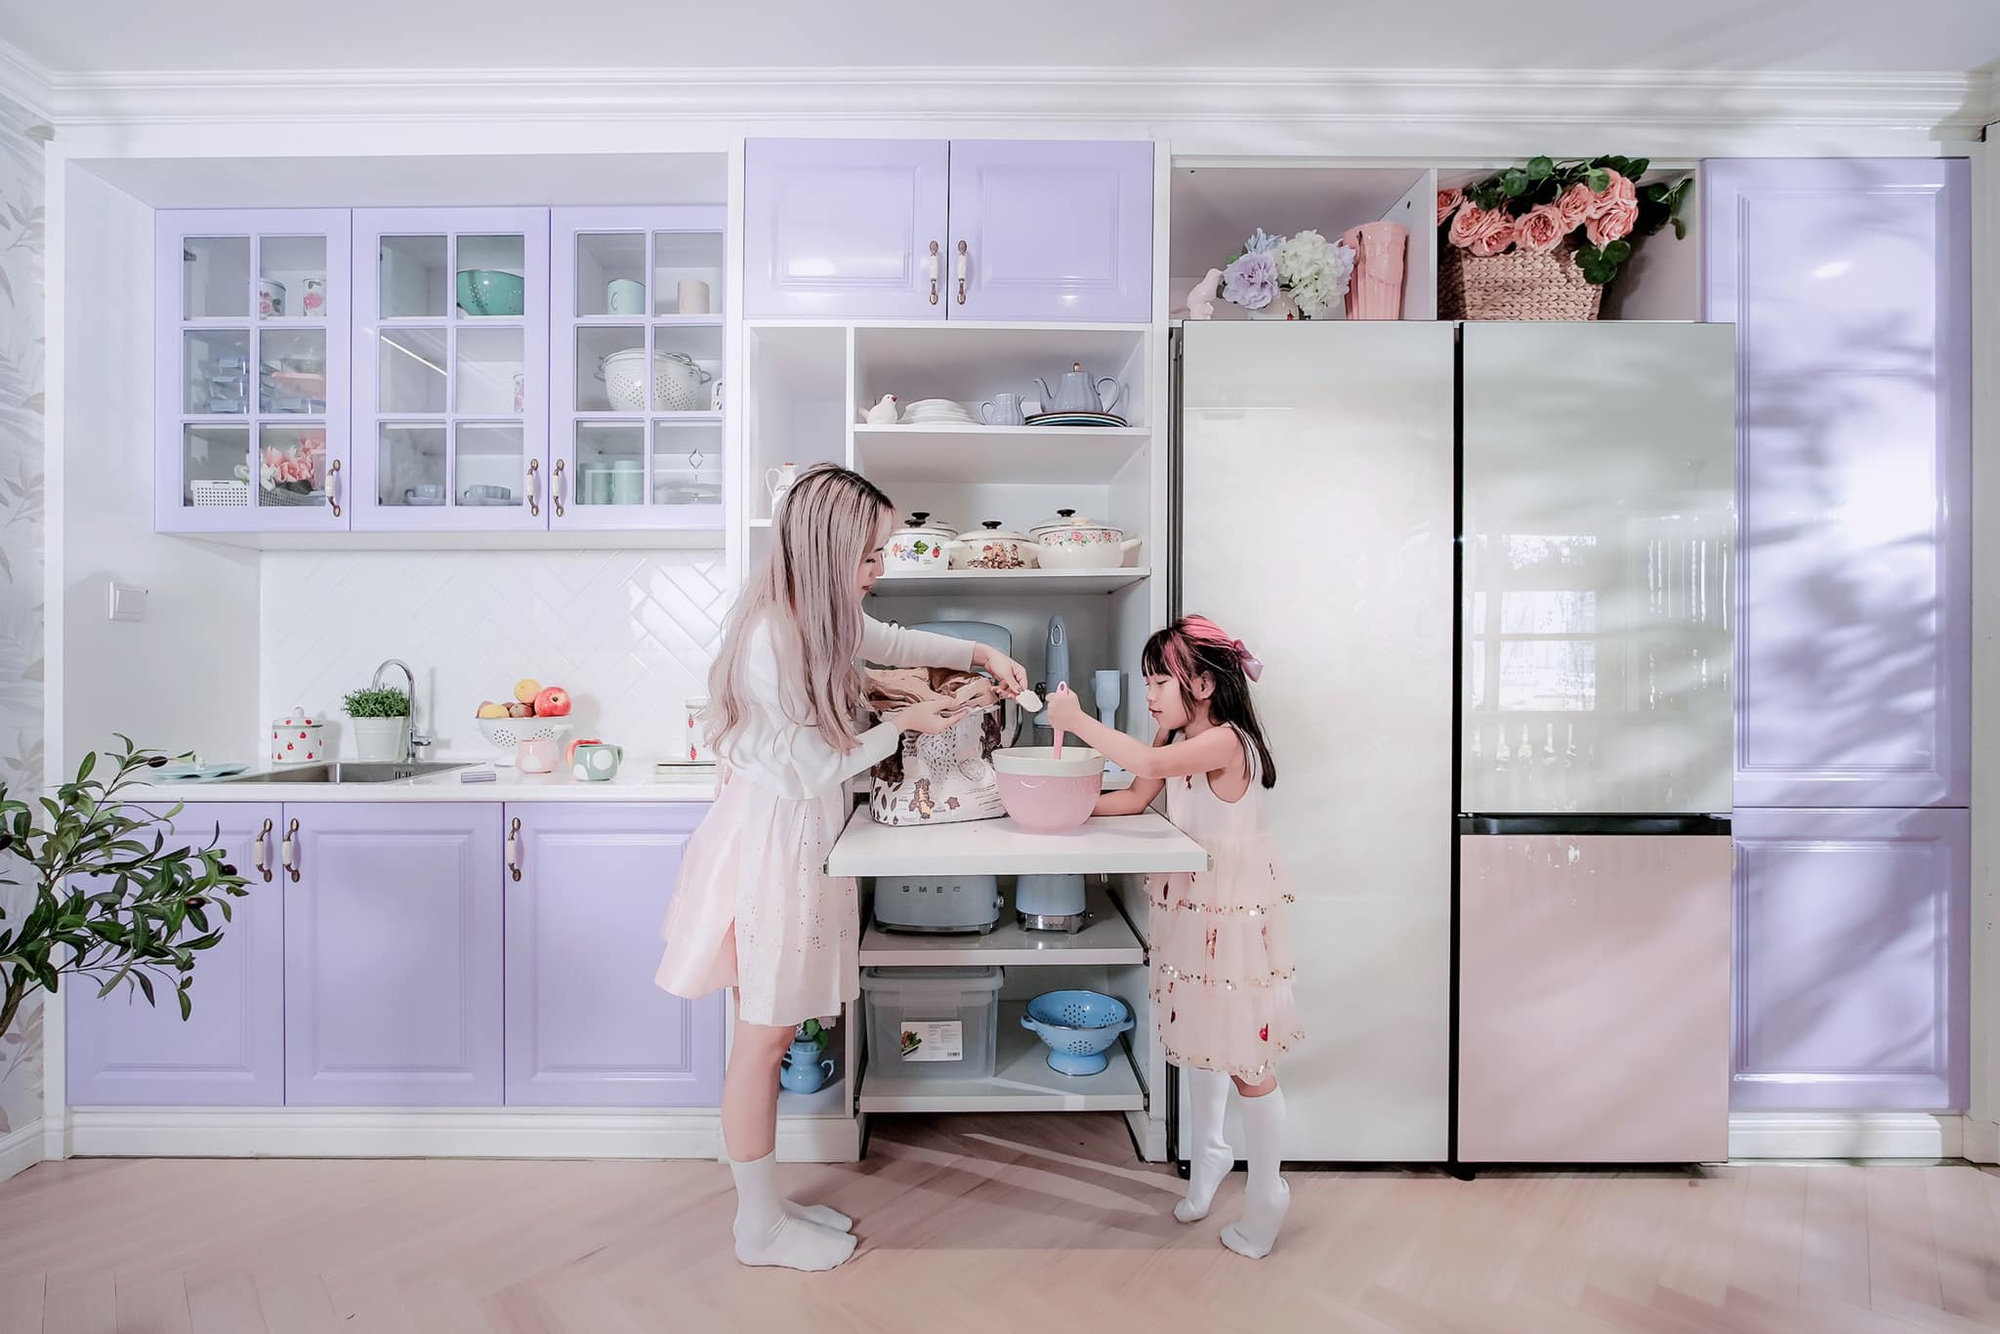 Góc bếp màu tím pastel với đủ các thiết bị hiện đại của mẹ 3 con ở TP. HCM-4